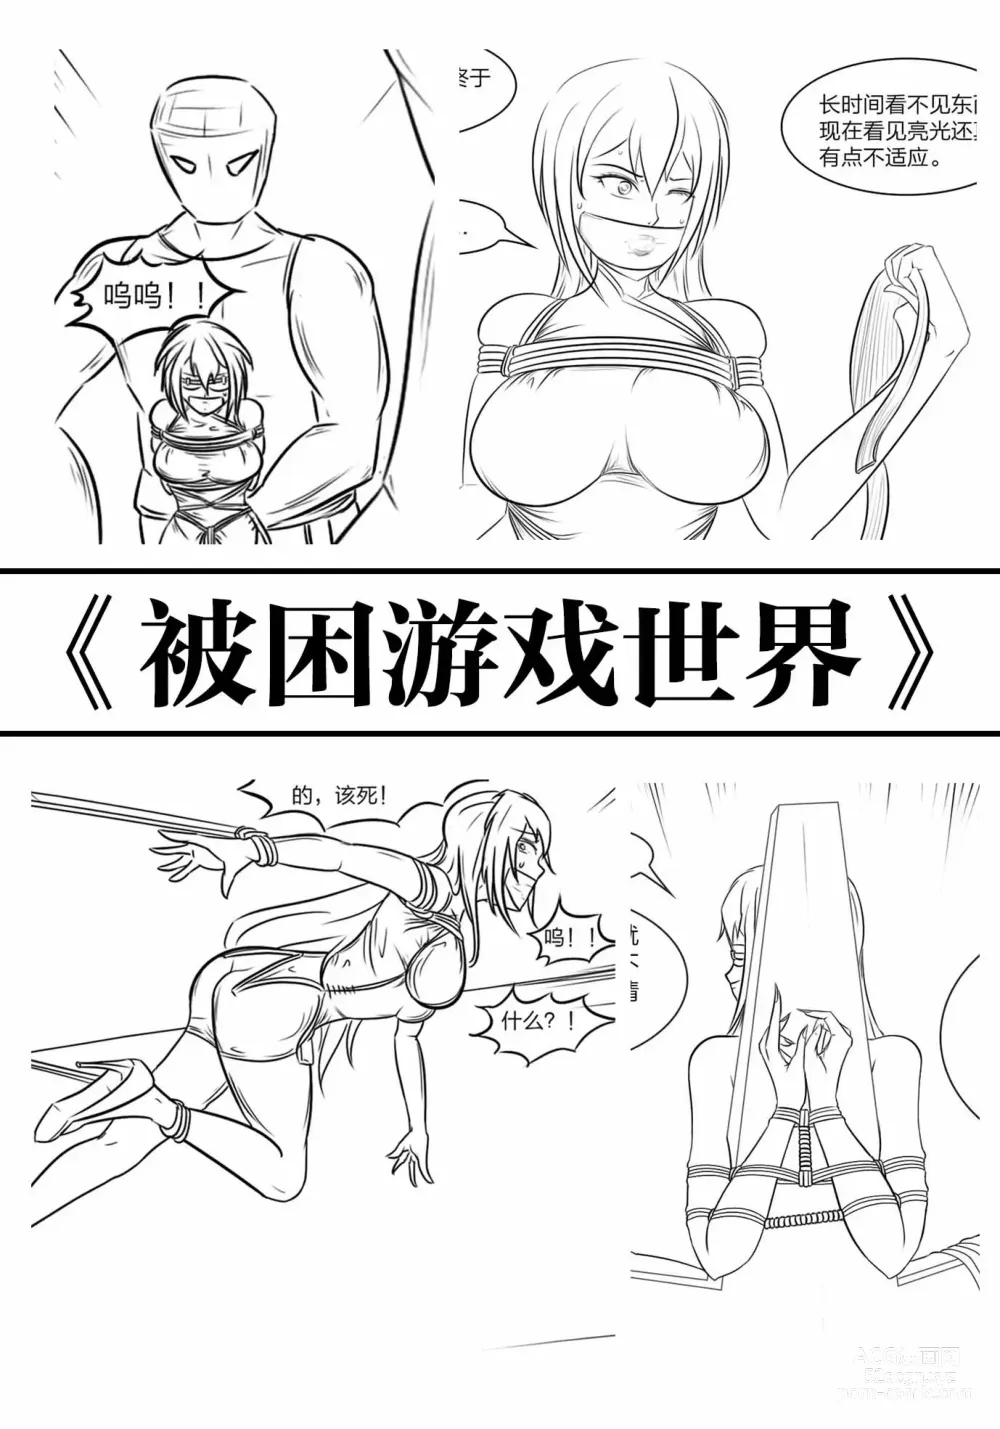 Page 1 of doujinshi 《被困游戏世界》